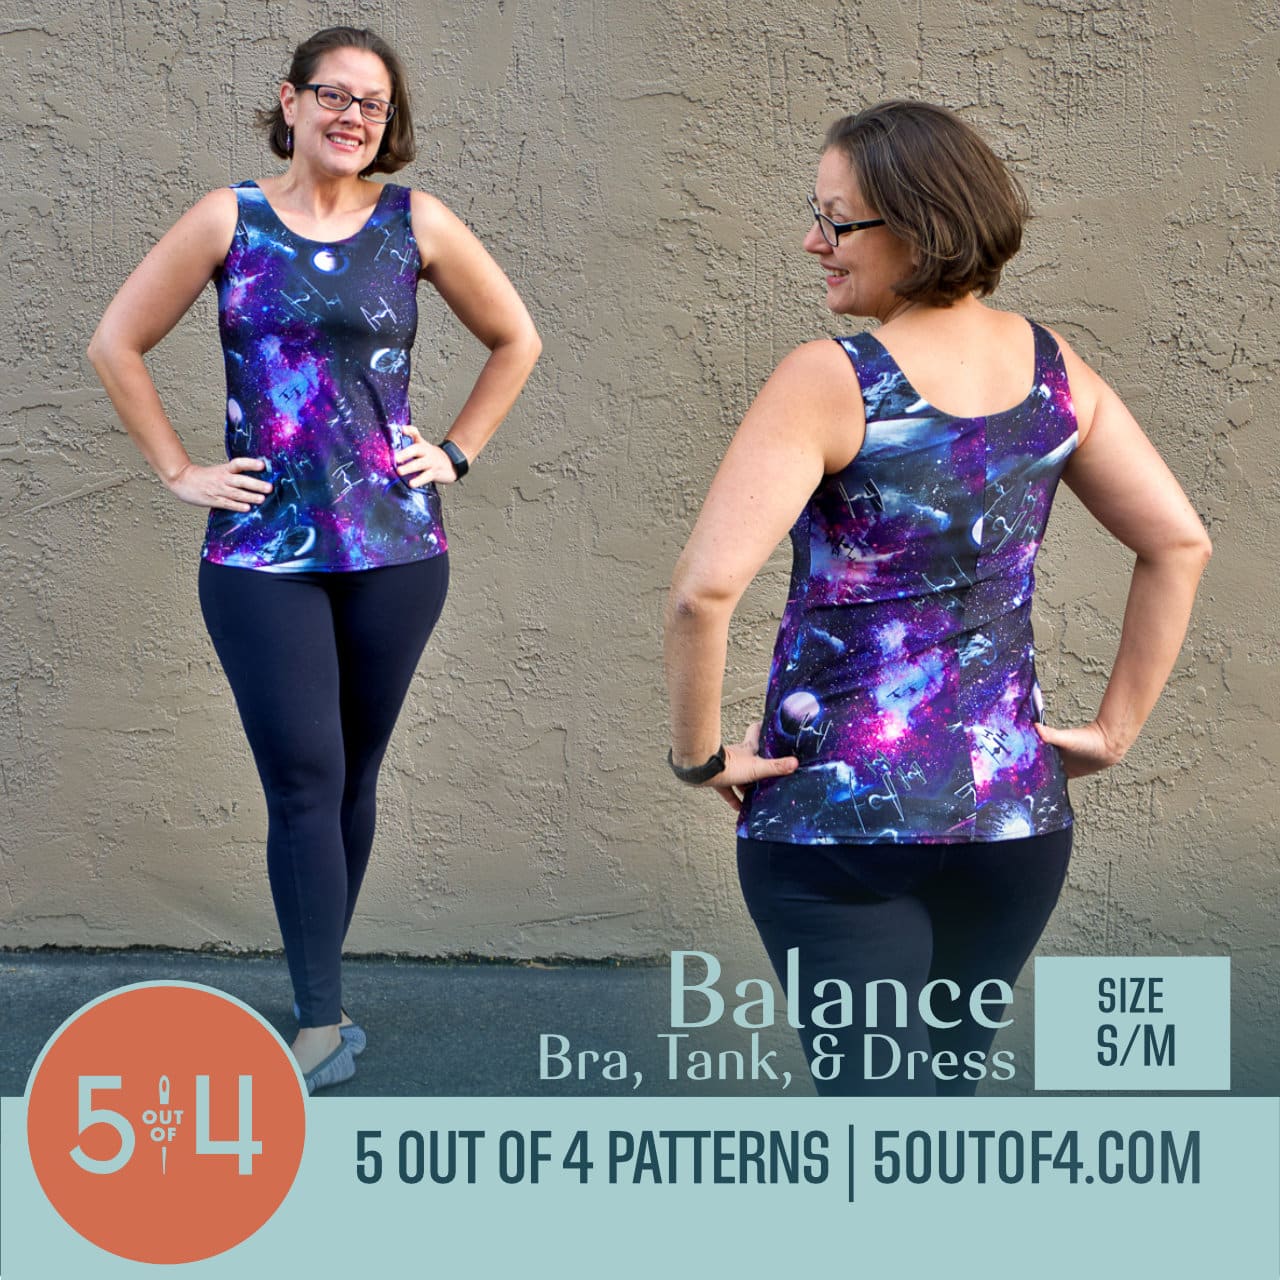 Balance Bra, Tank, and Dress - 5 out of 4 Patterns